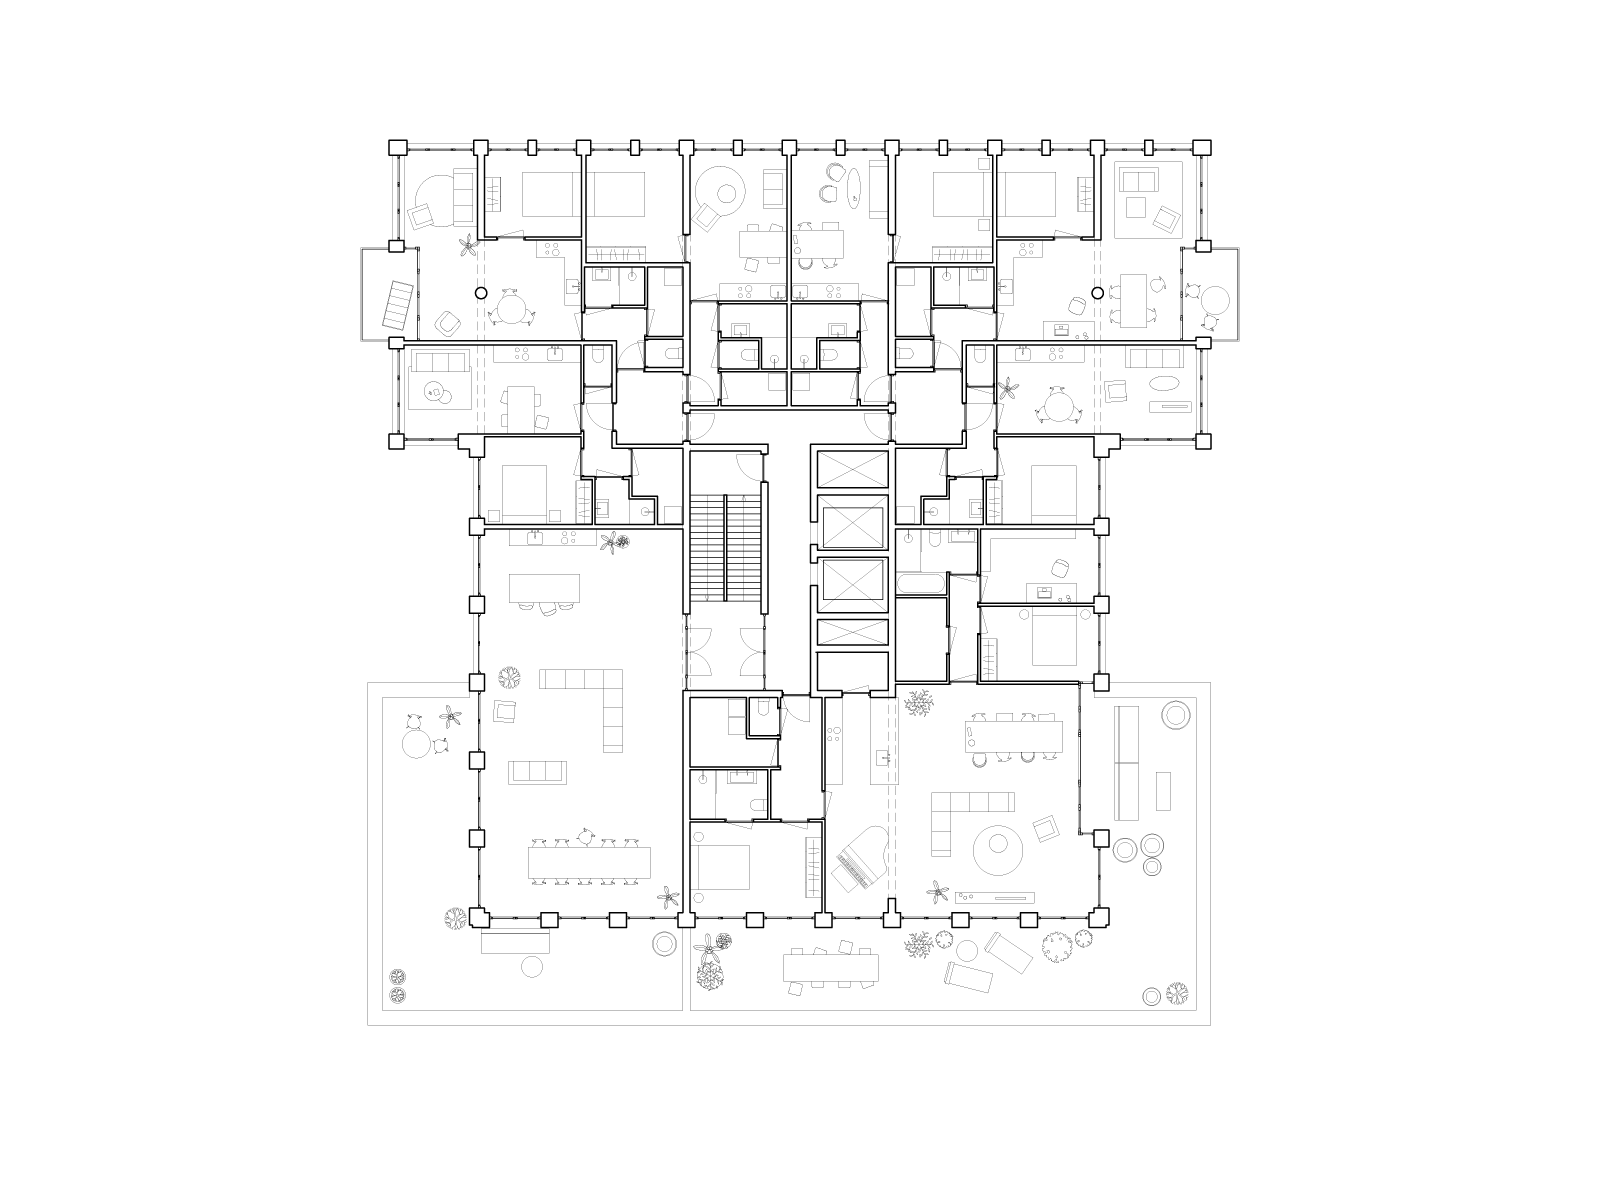 rotterdam baan project plan drawing of eigth floor by beta architect amsterdam evert klinkenberg gus auguste van oppen